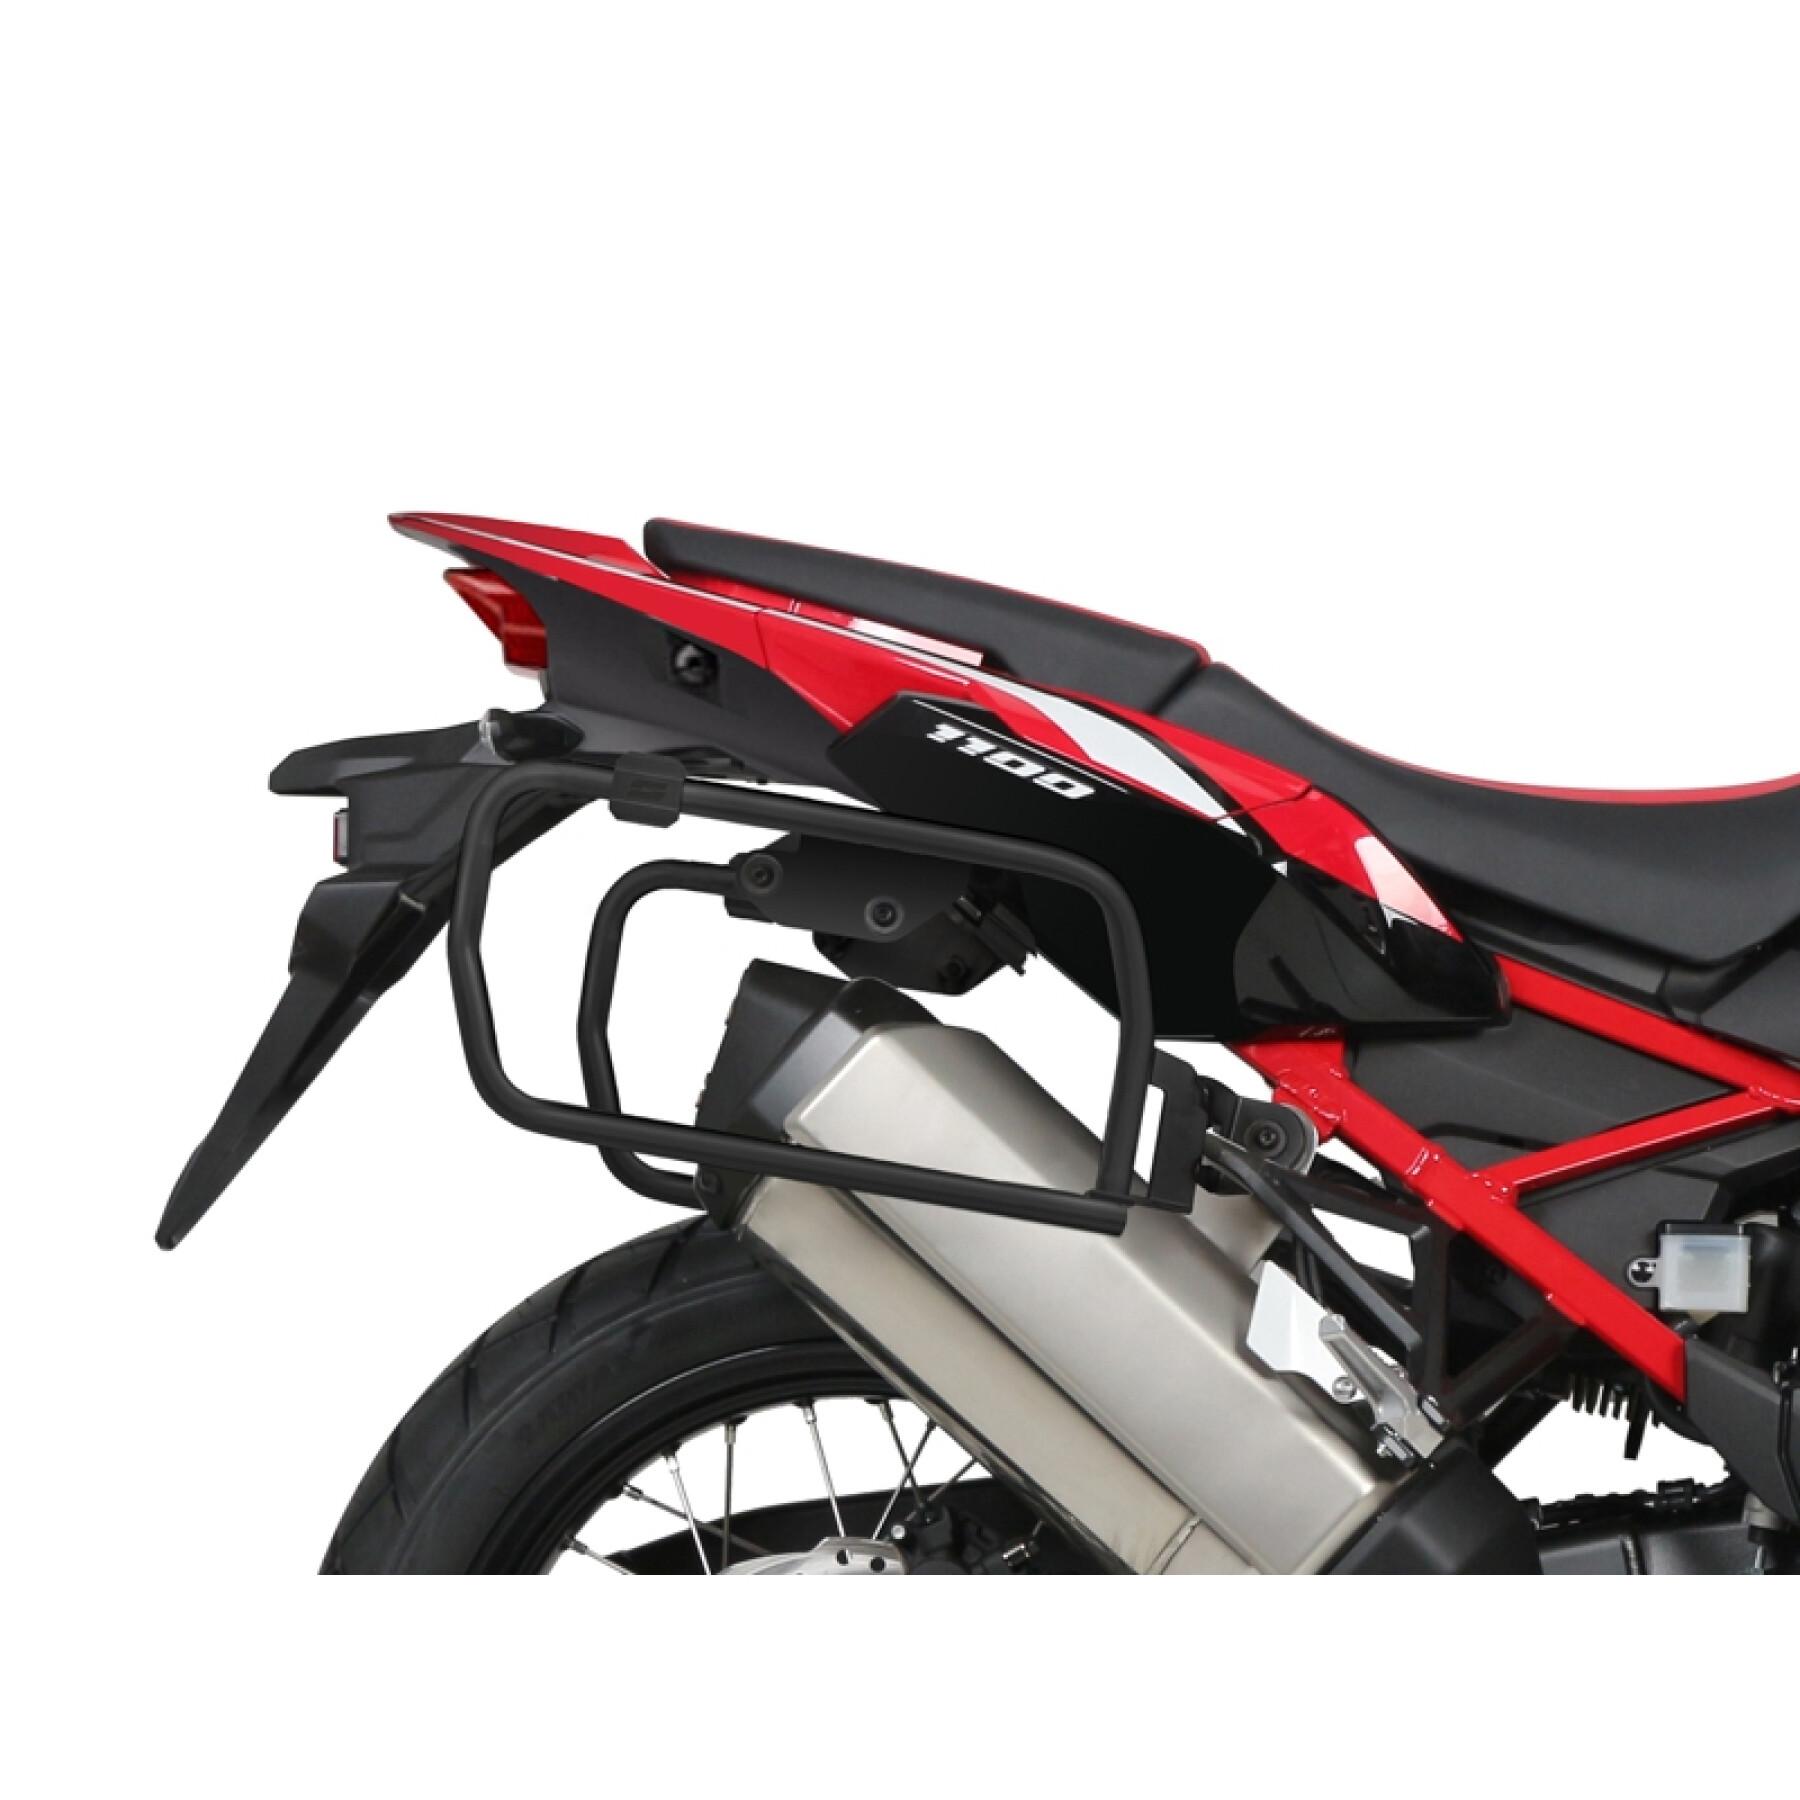 Apoio de caixa lateral de motocicleta Shad 4P System Honda Crf 1100 L Africa Twin 2020-2020